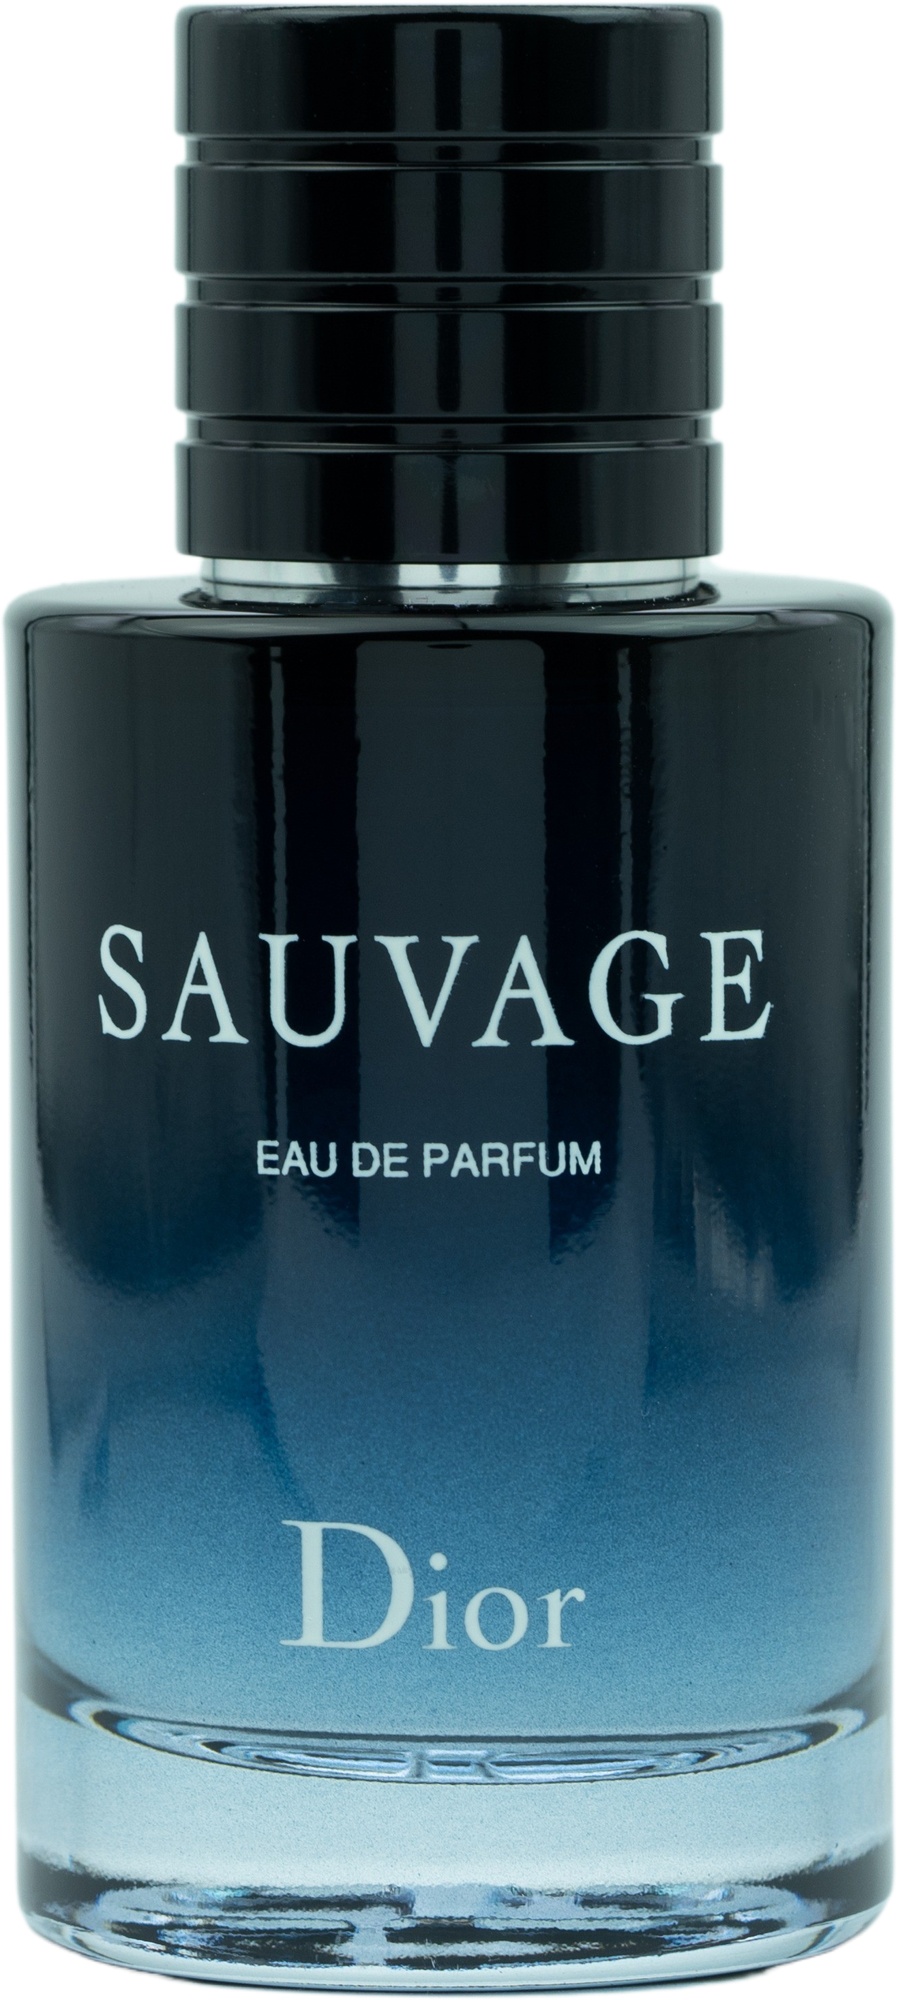 Bild von Sauvage Eau de Parfum 60 ml